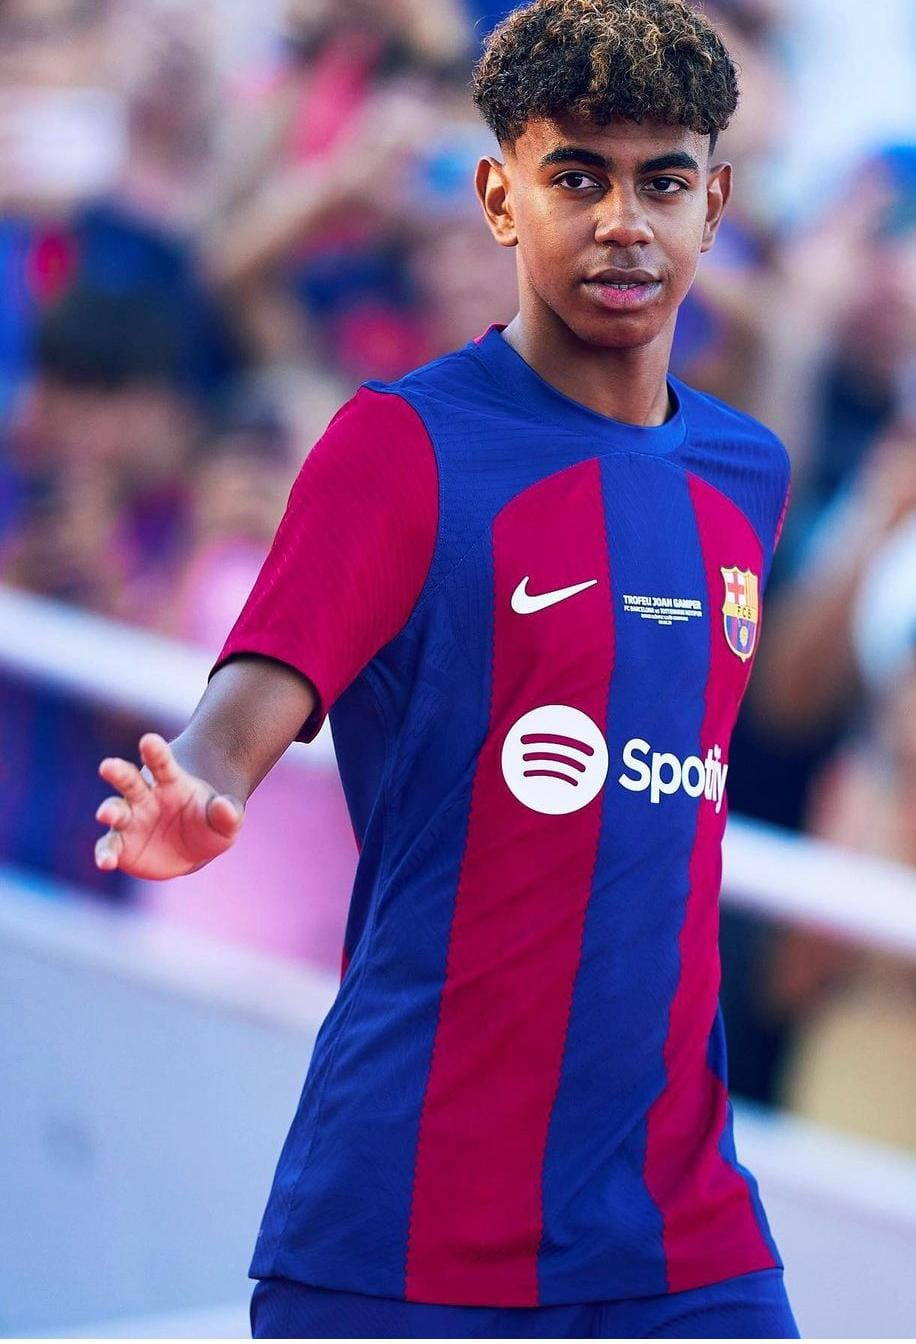 Lamine Yamal, de 15 anos, se torna o jogador mais jovem a estrear pelo  Barcelona